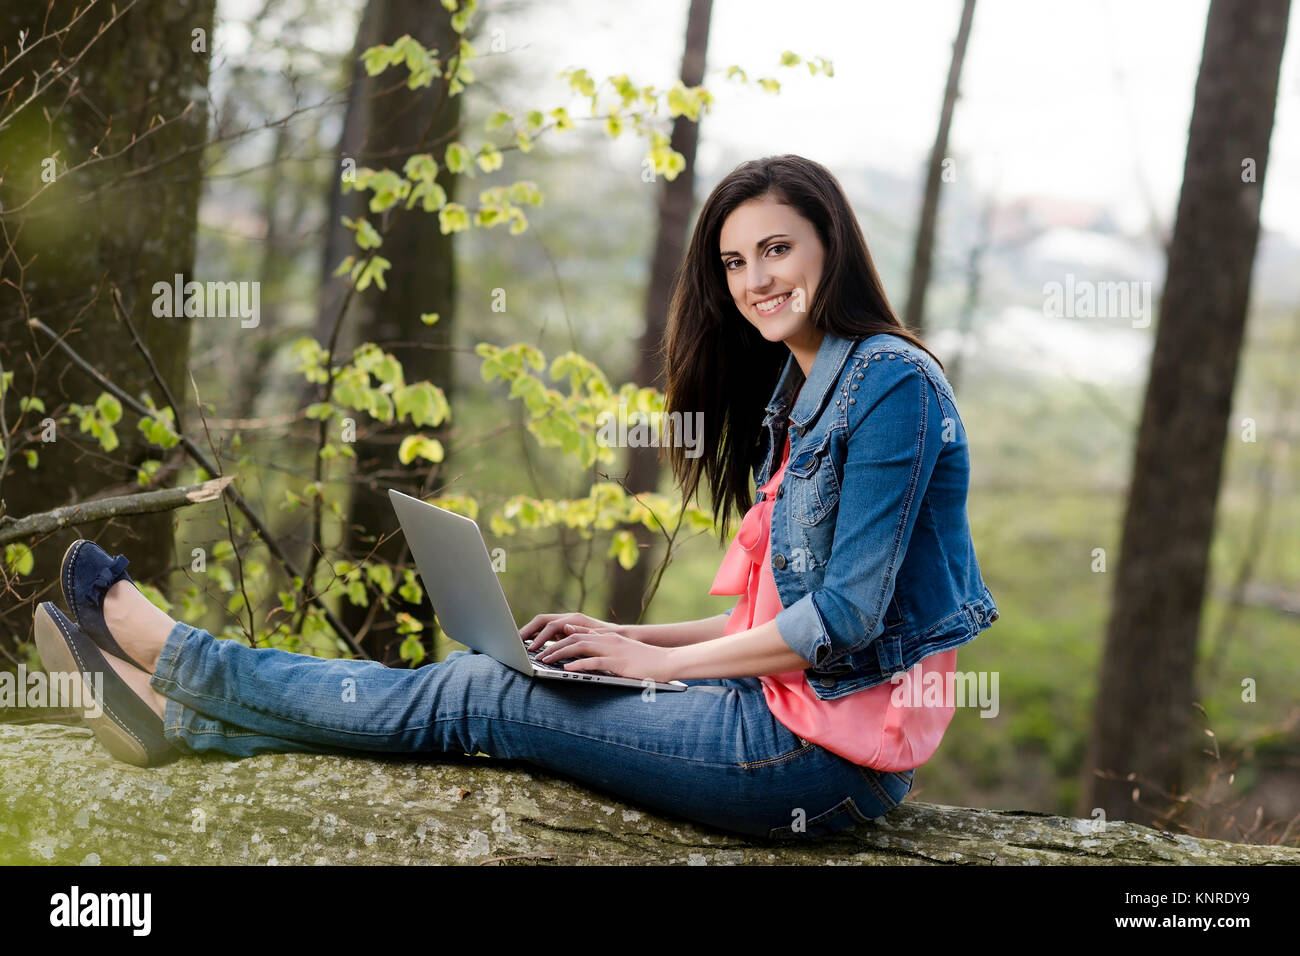 Junge Frau sitzt mit Laptop auf einem gefaellten Baumstamm - woman with laptop in nature Stock Photo